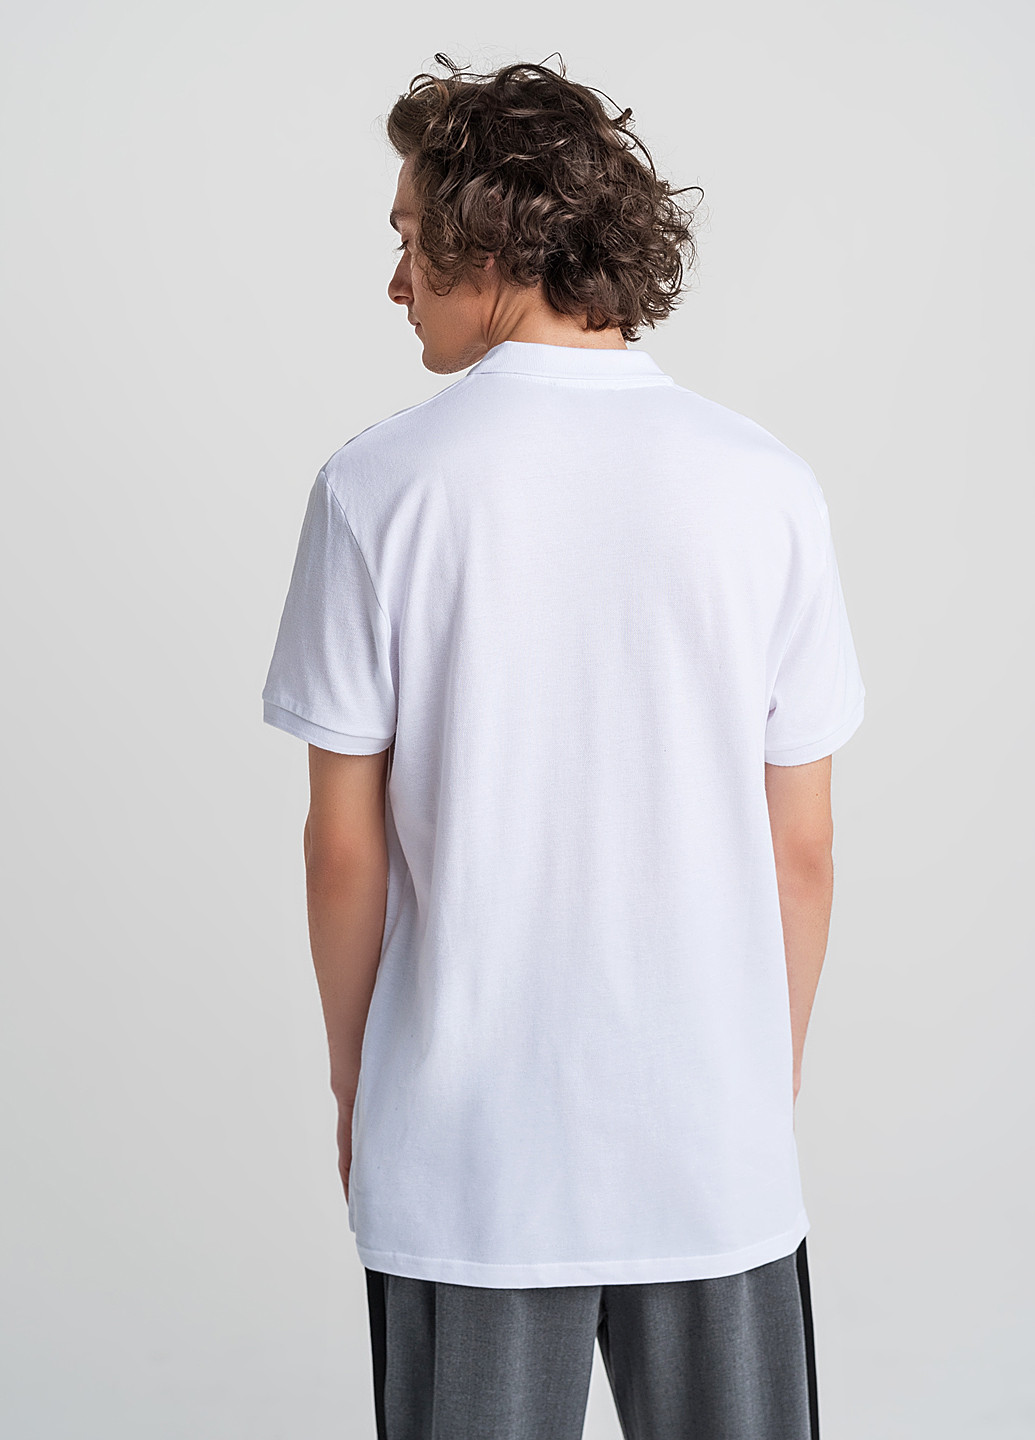 Белая футболка-рубашка для мужчин befree